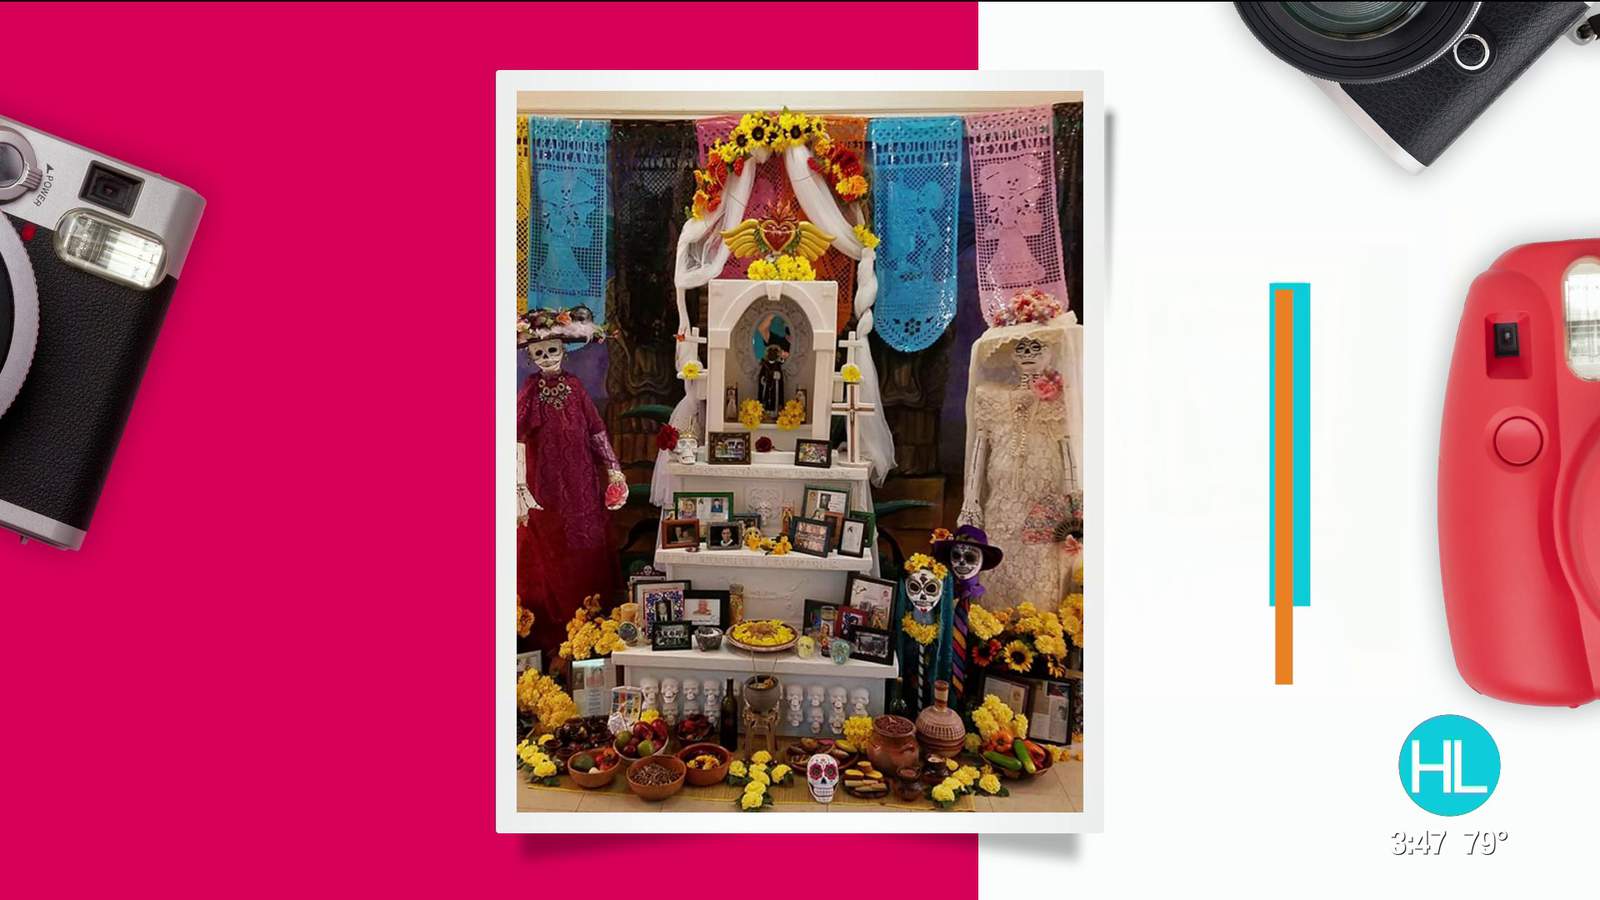 MECA Houston curator shares the significance of Día de los Muertos altars